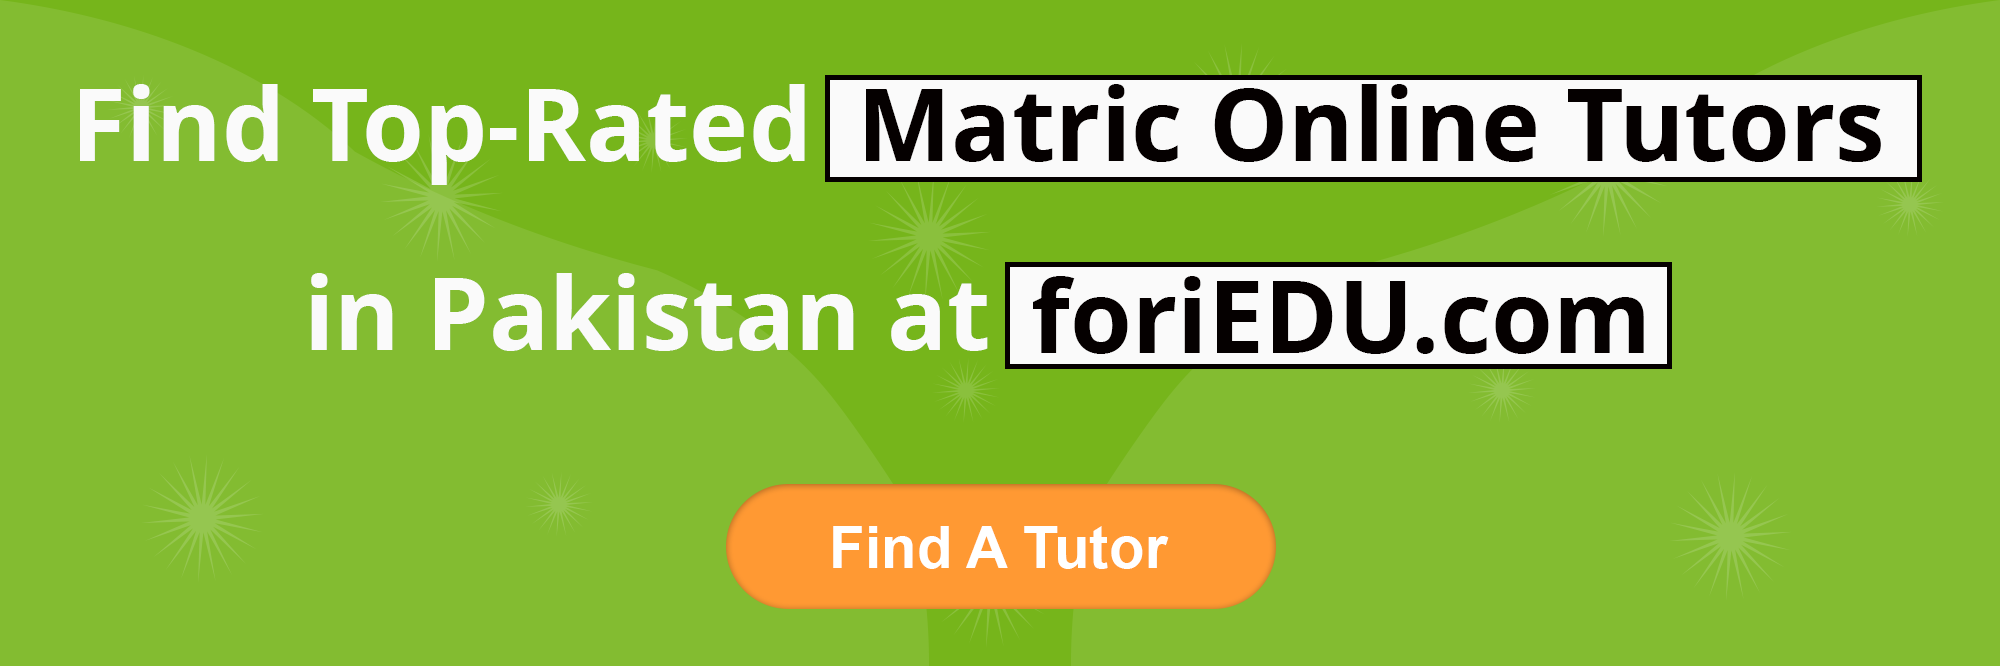 Matric Online Tutors in Pakistan 2